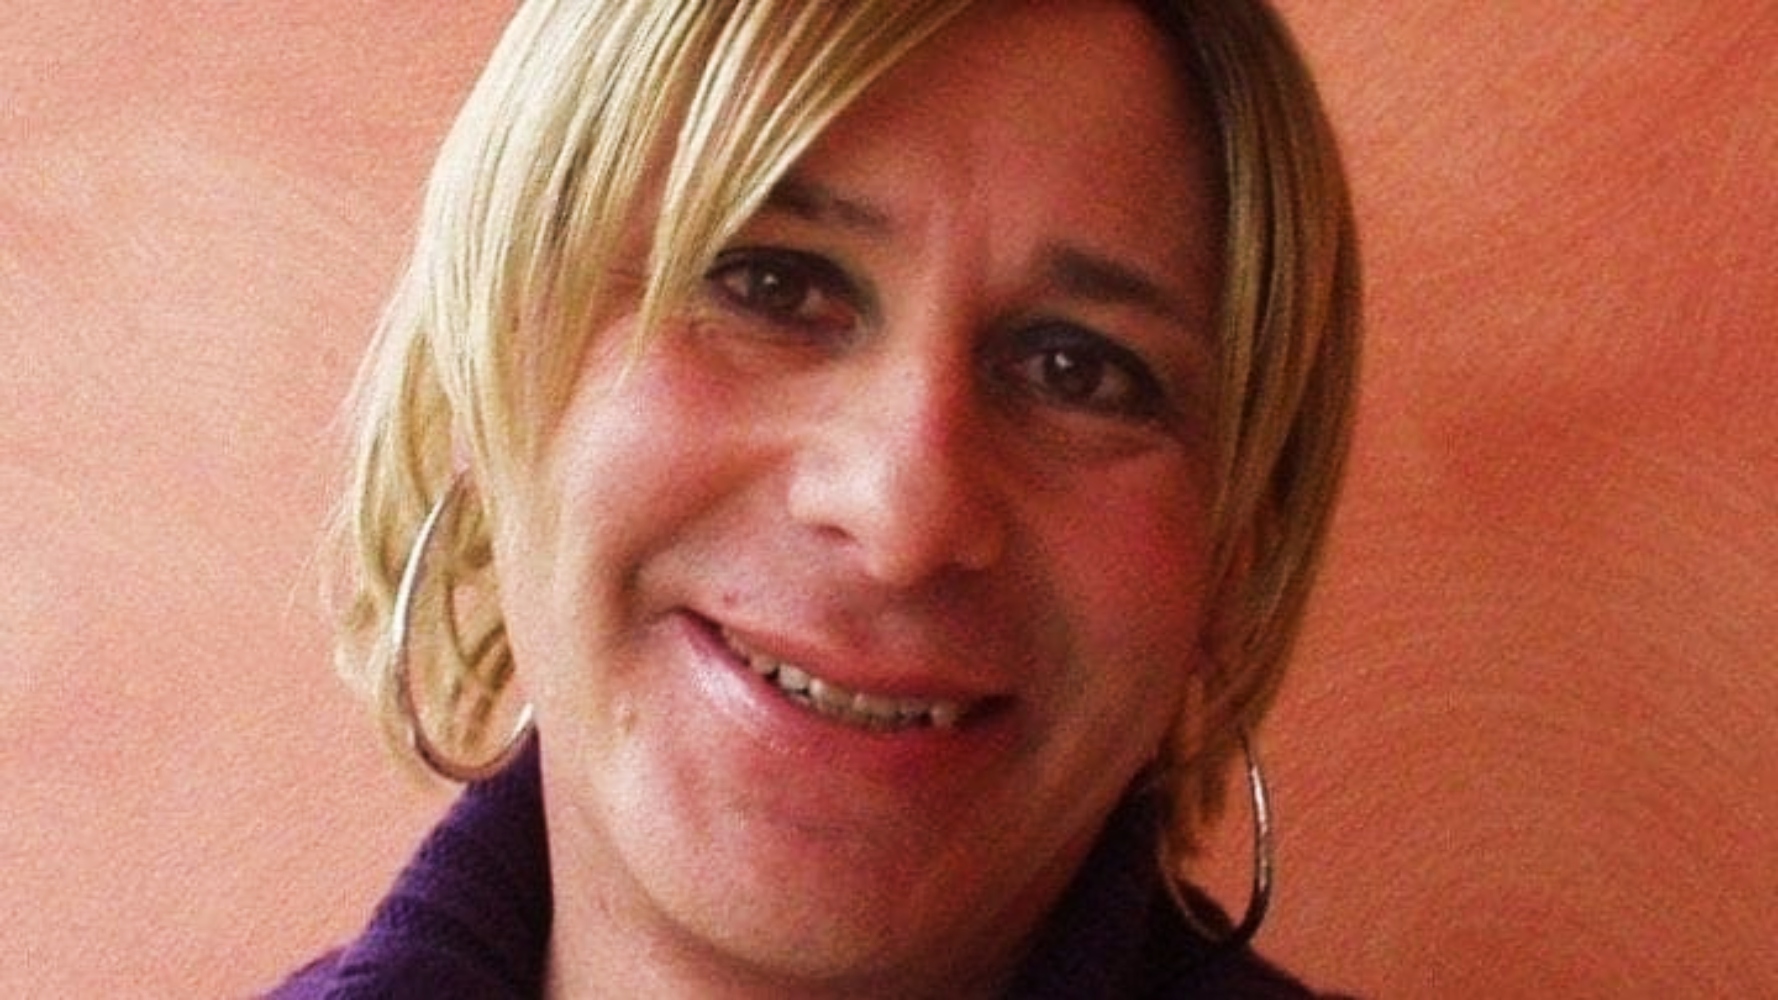 Η τρανσφοβία οδήγησε την εκπαιδευτικό Cloe Bianco να δώσει τέλος στη ζωή της